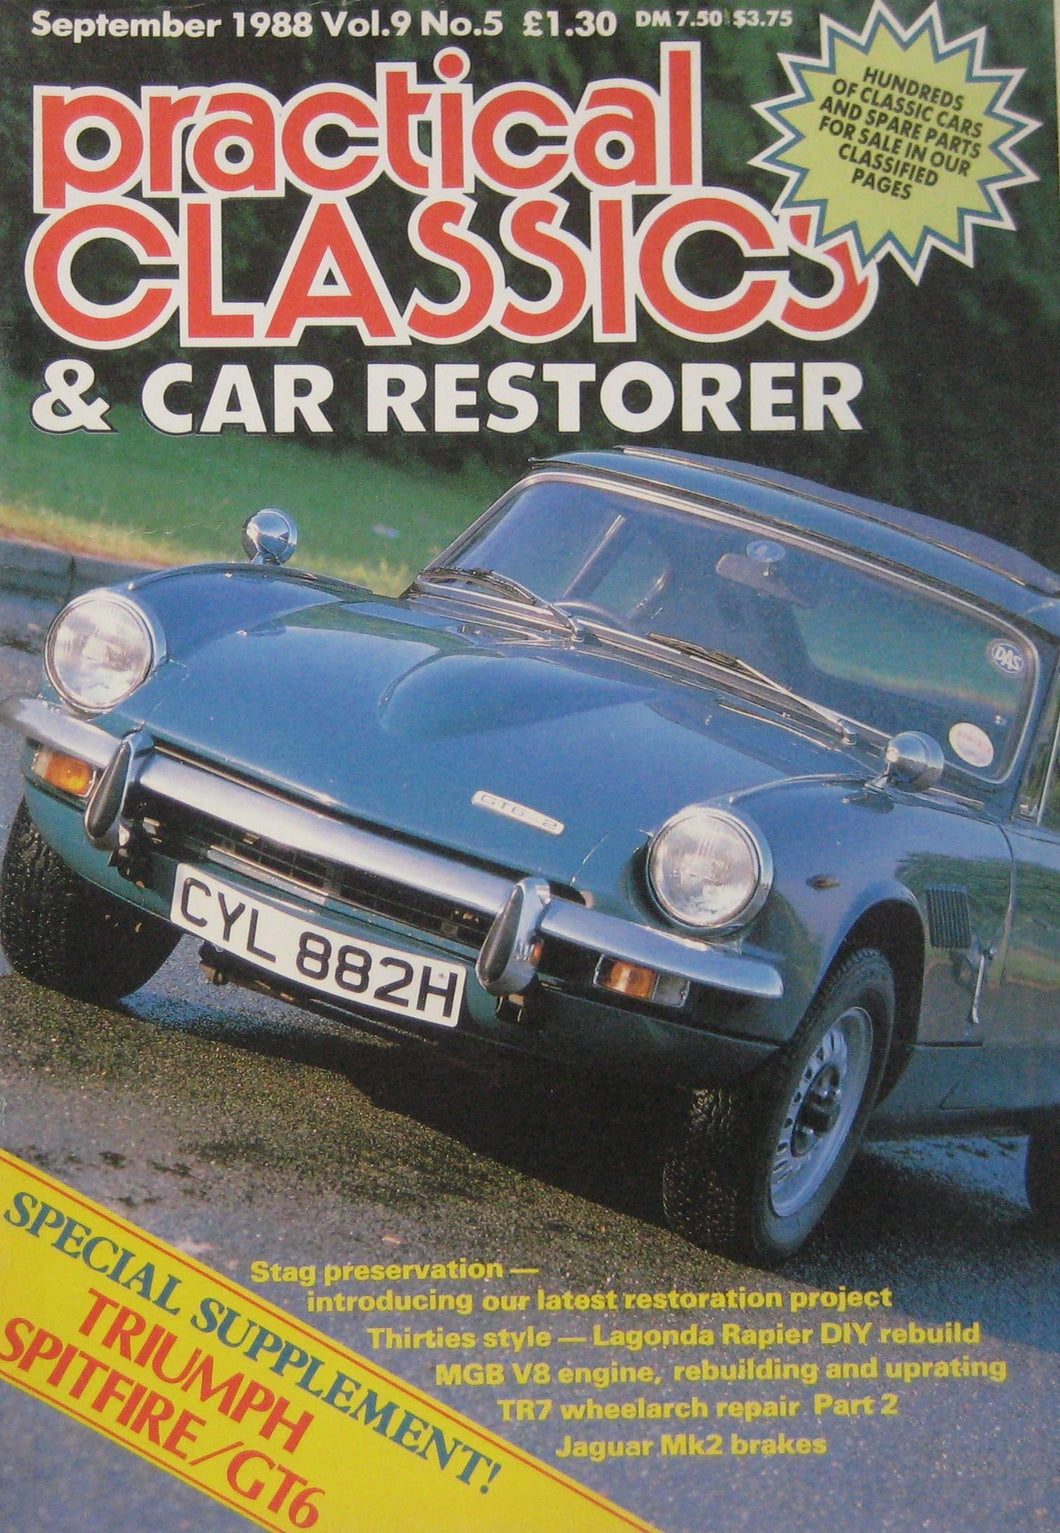 Practical Classics magazine 09/1988 featuring Lagonda Rapier Abbott, Triumph